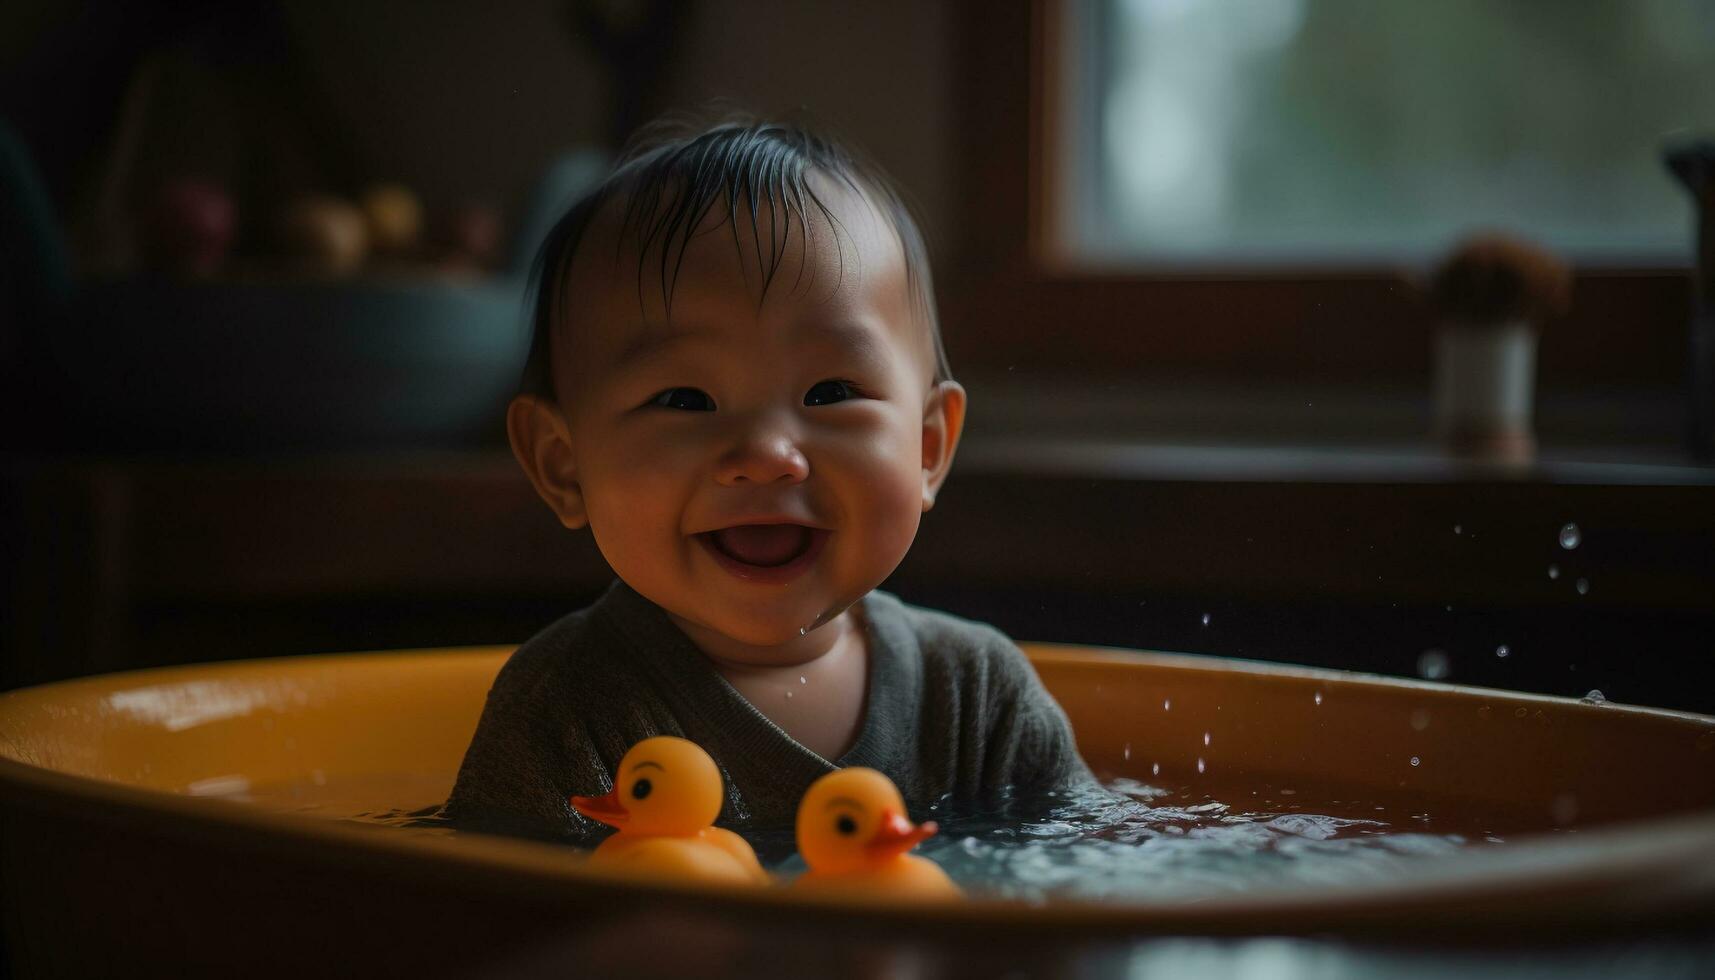 Smiling baby boys enjoying playful bathtub fun with clean hygiene generated by AI photo